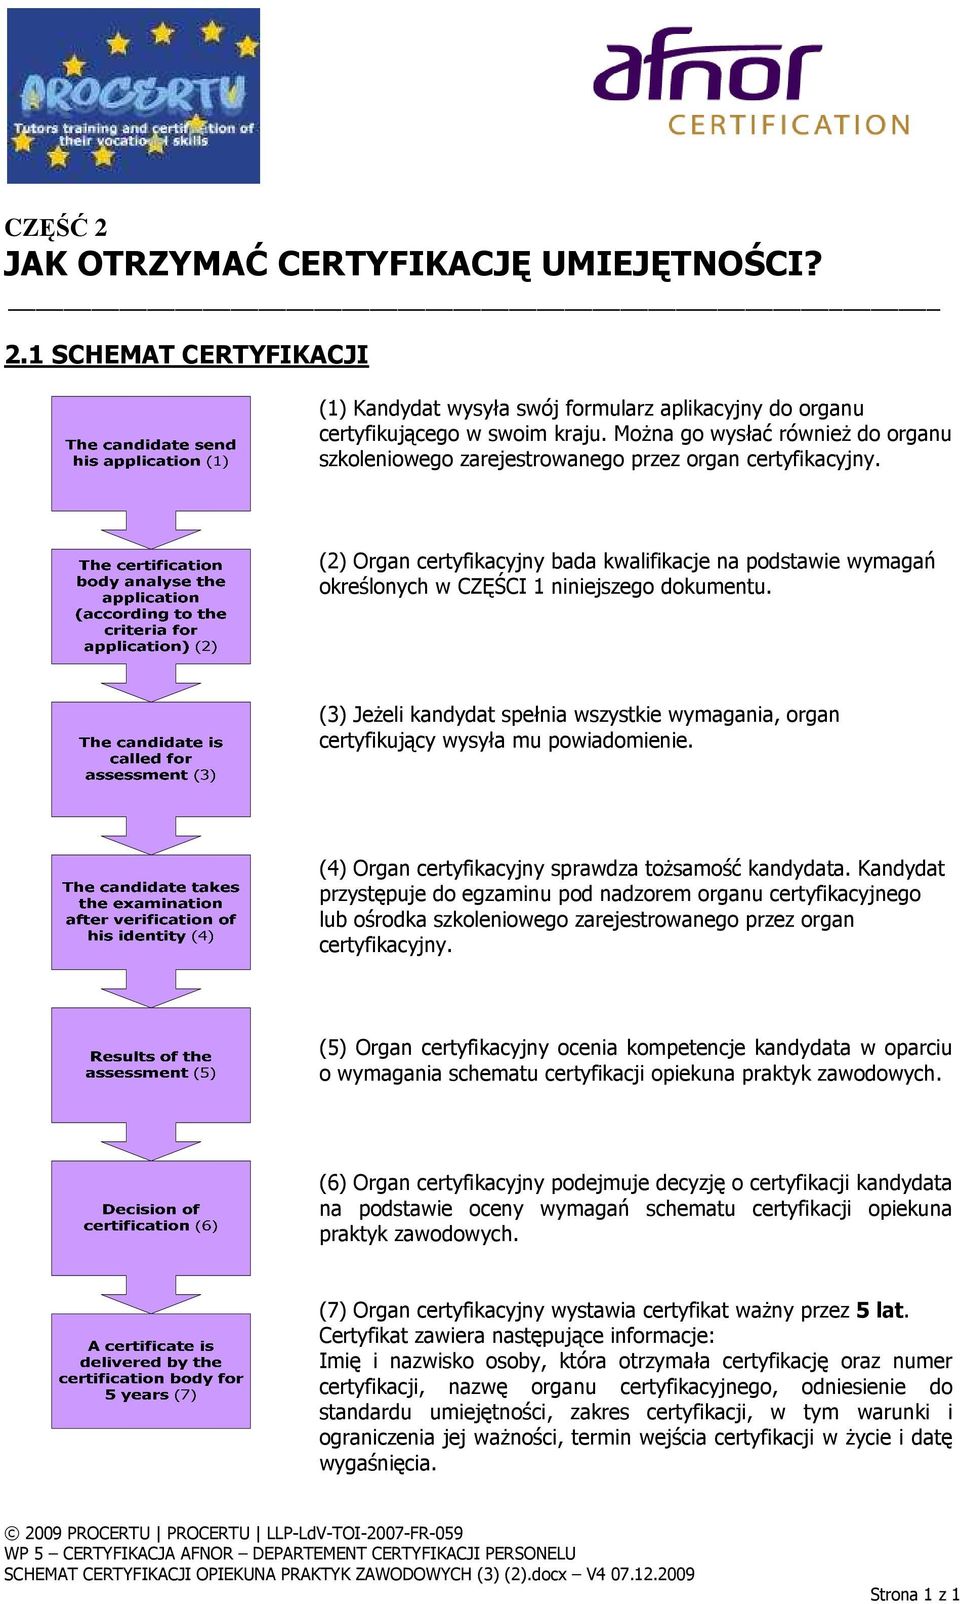 (2) Organ certyfikacyjny bada kwalifikacje na podstawie wymagań określonych w CZĘŚCI 1 niniejszego dokumentu.